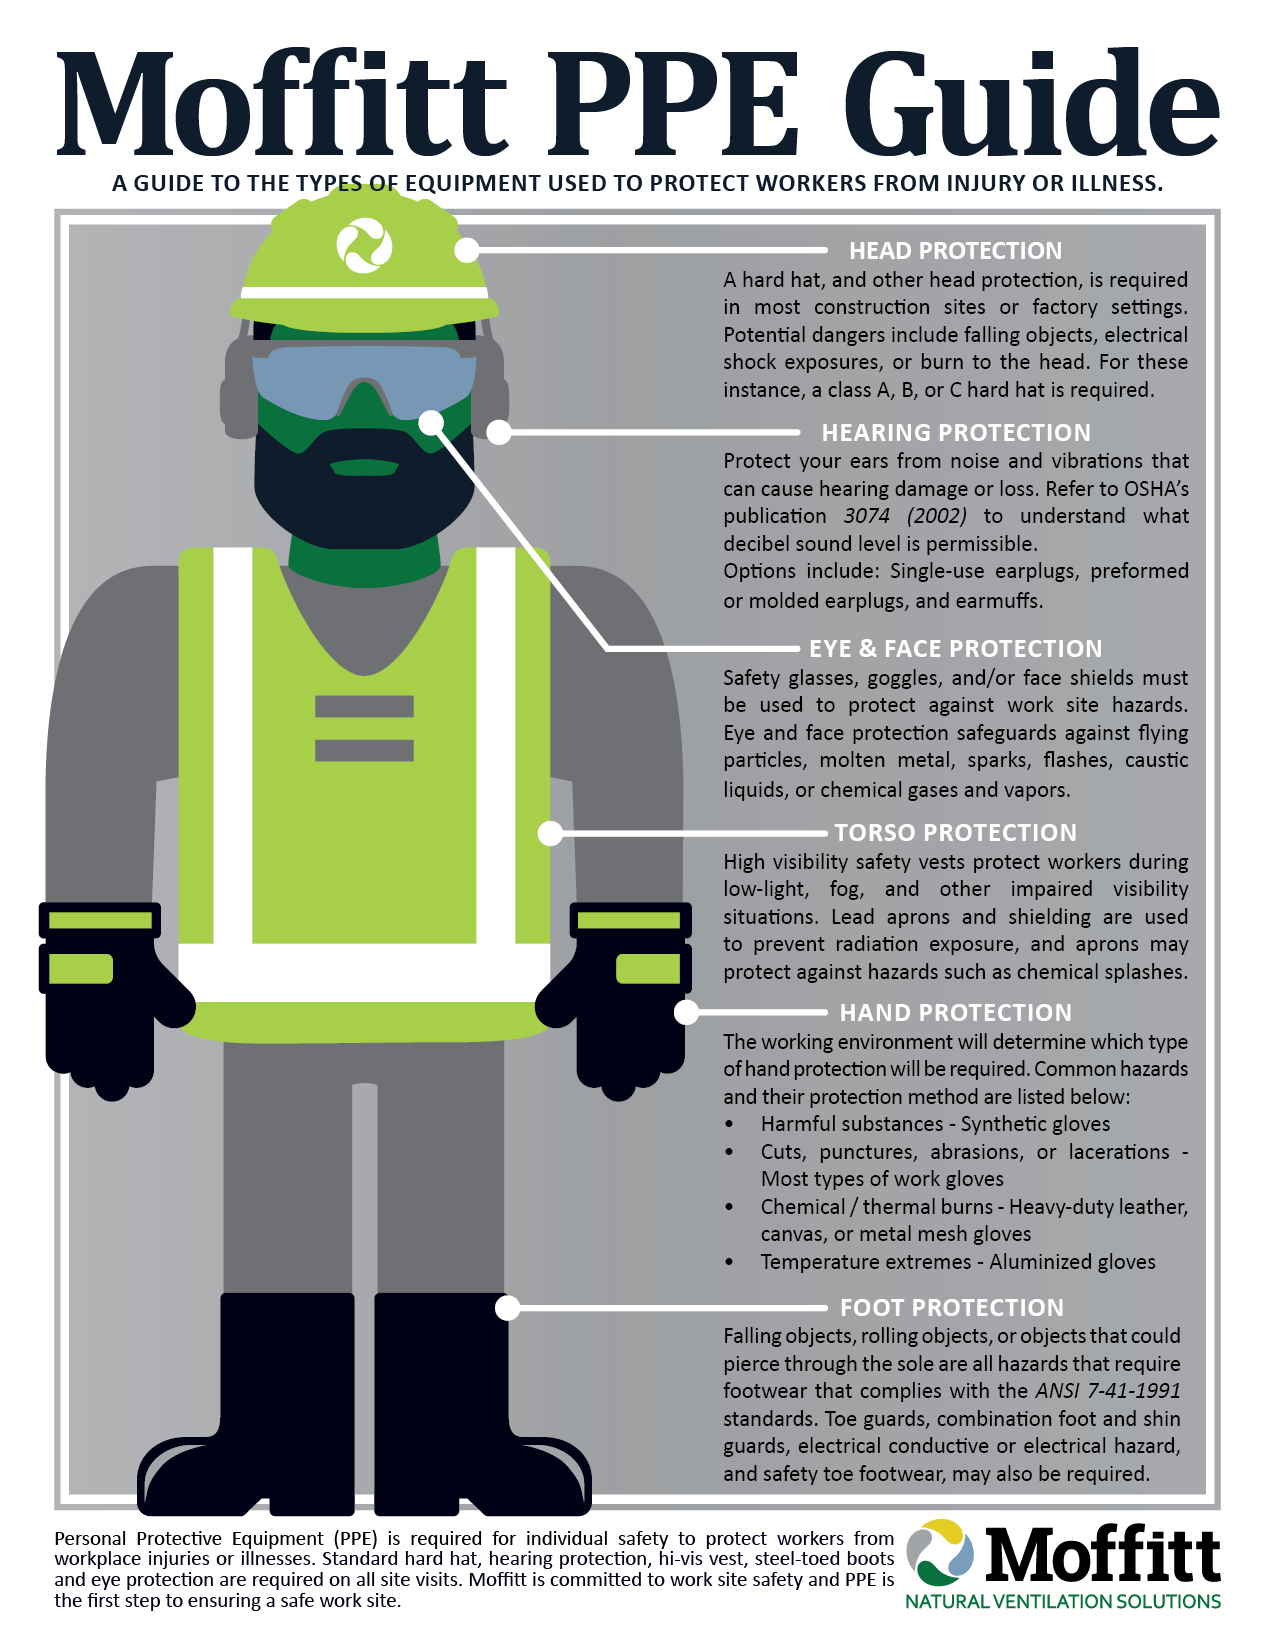 Moffitt PPE Infographic - Moffitt